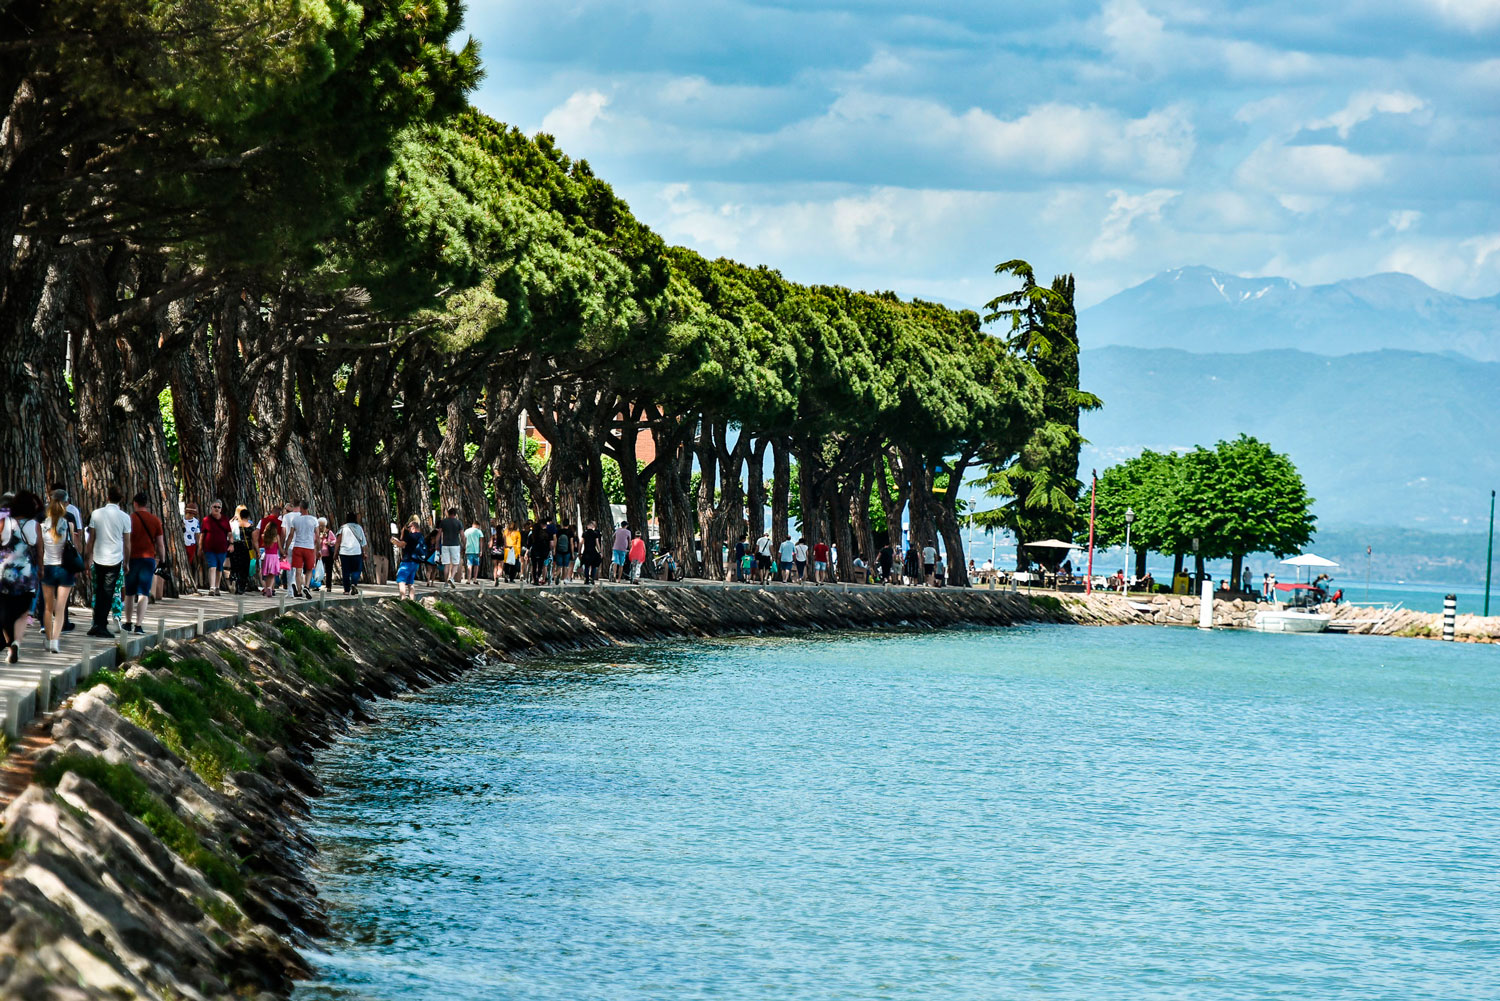 Walking path along Garda lake